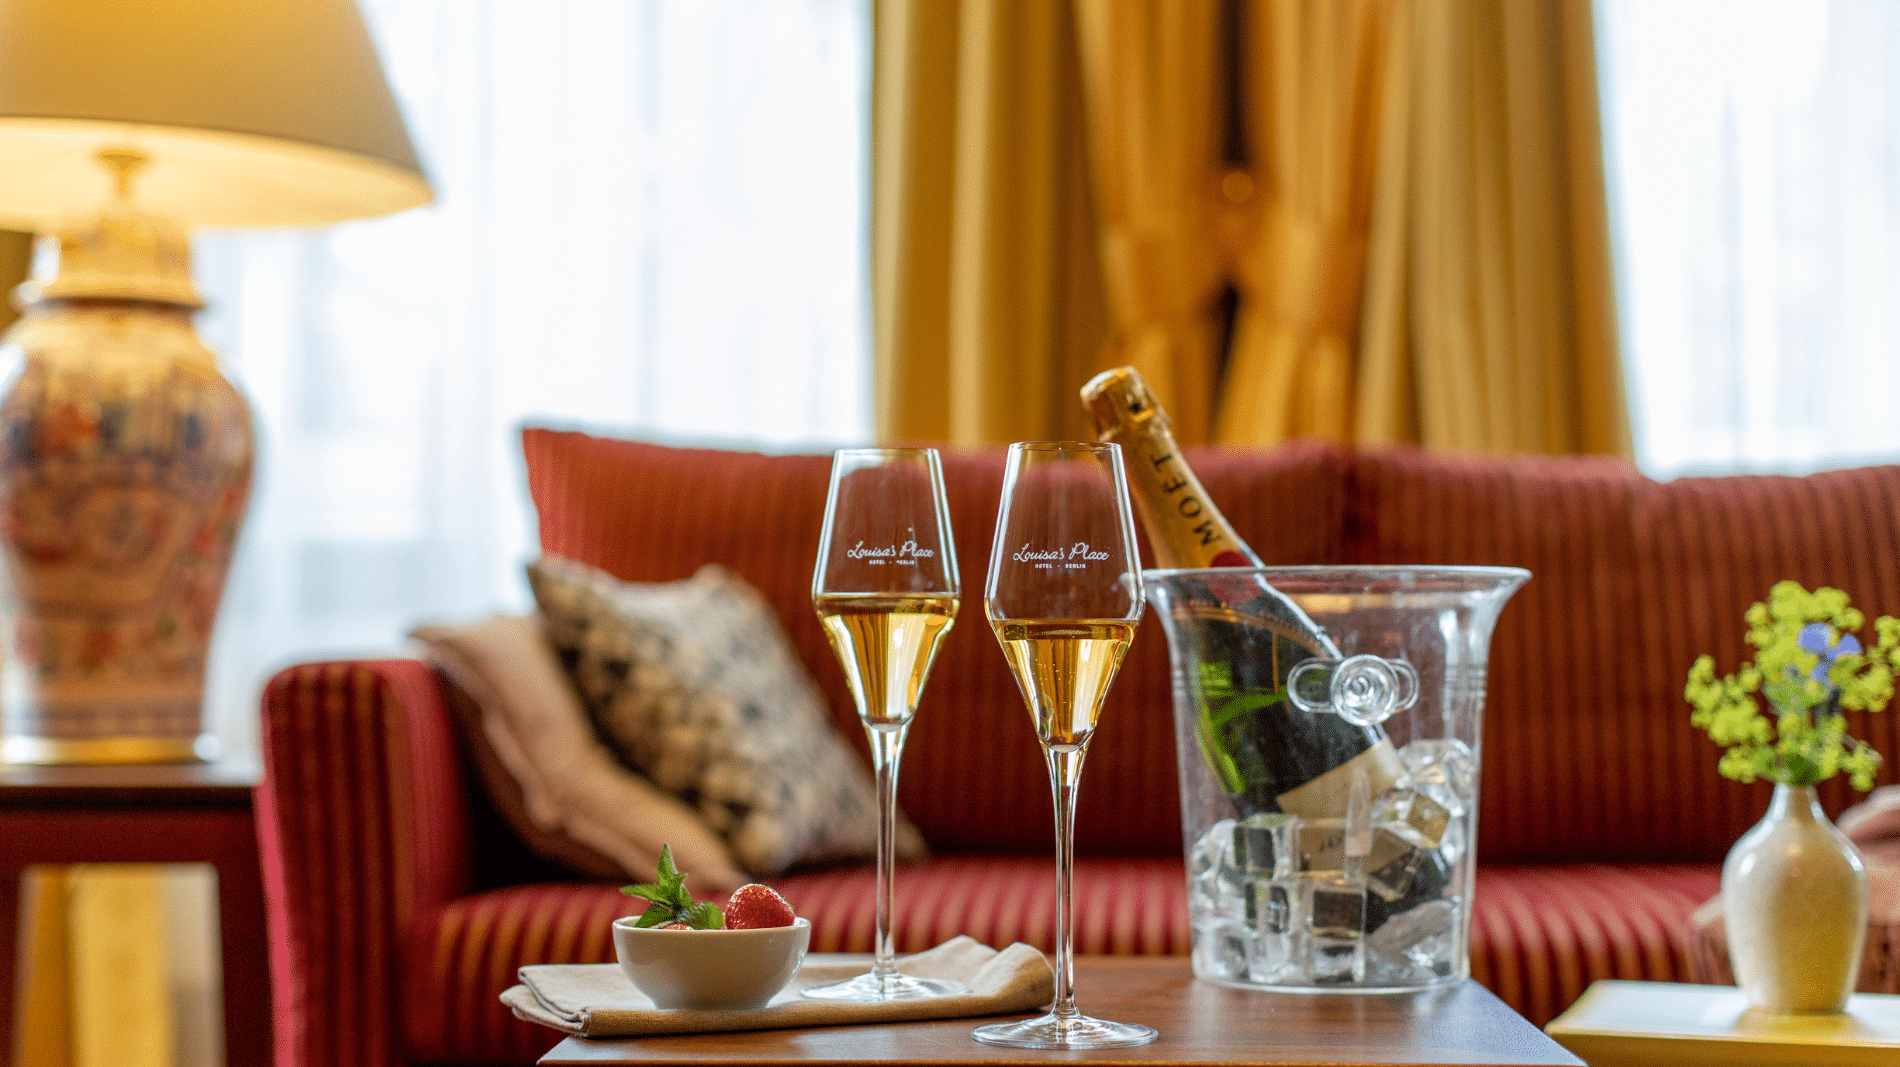 Zwei gefüllte Champagner Gläser steht angerichtet mit Erdbeeren und einem Champagner Kühler auf dem Tisch in einer Suite im Boutique Hotel Louisa´s Place in Berlin.